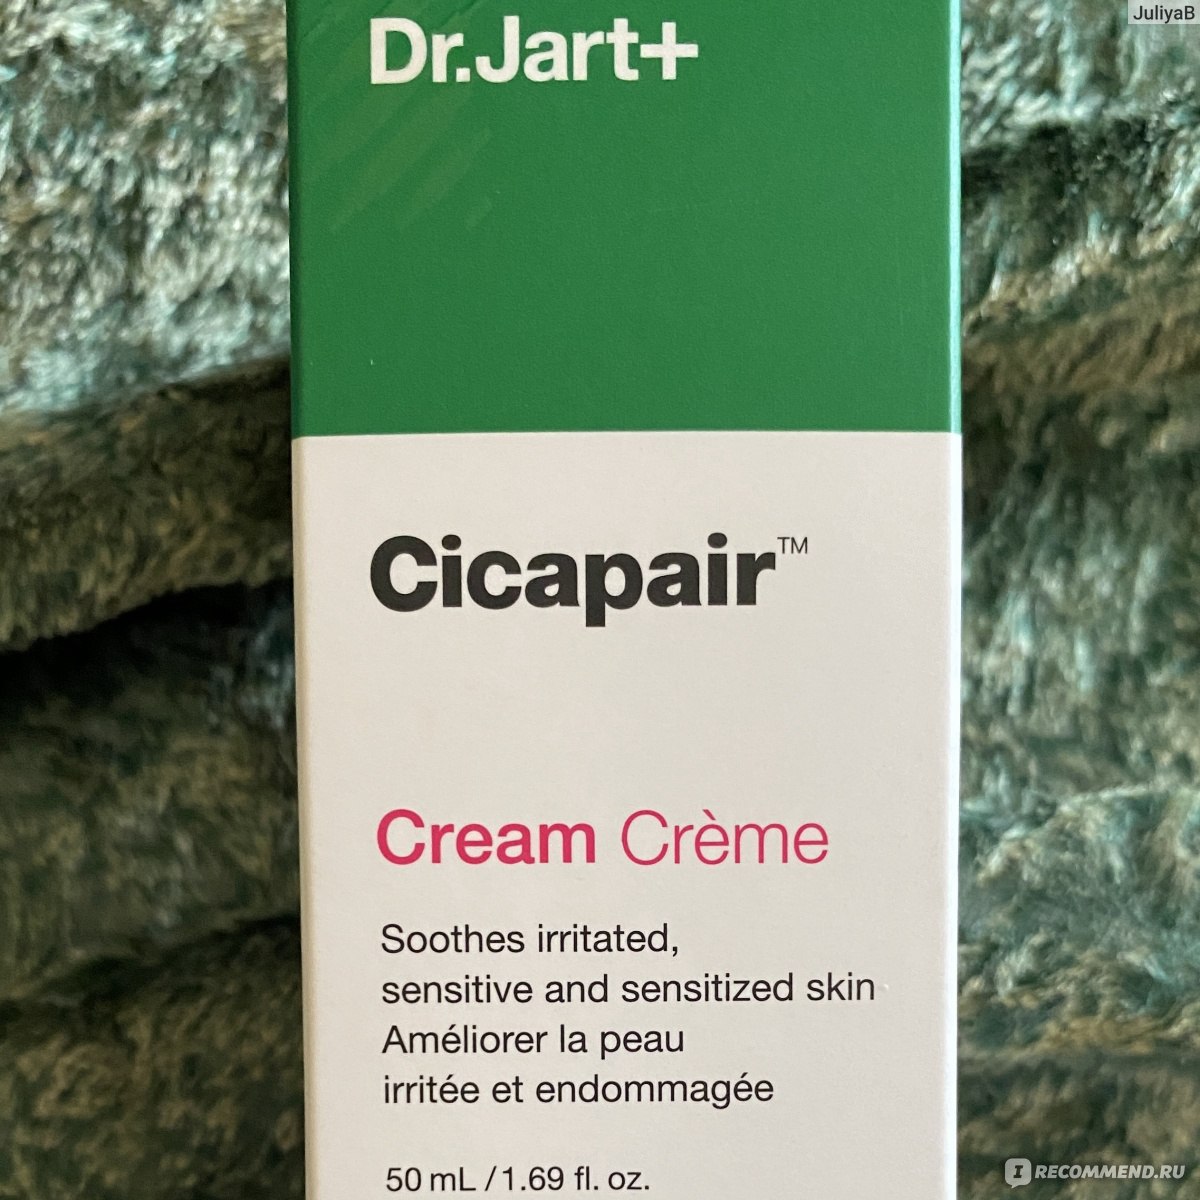 Dr.Jart+ Cicapair Crème